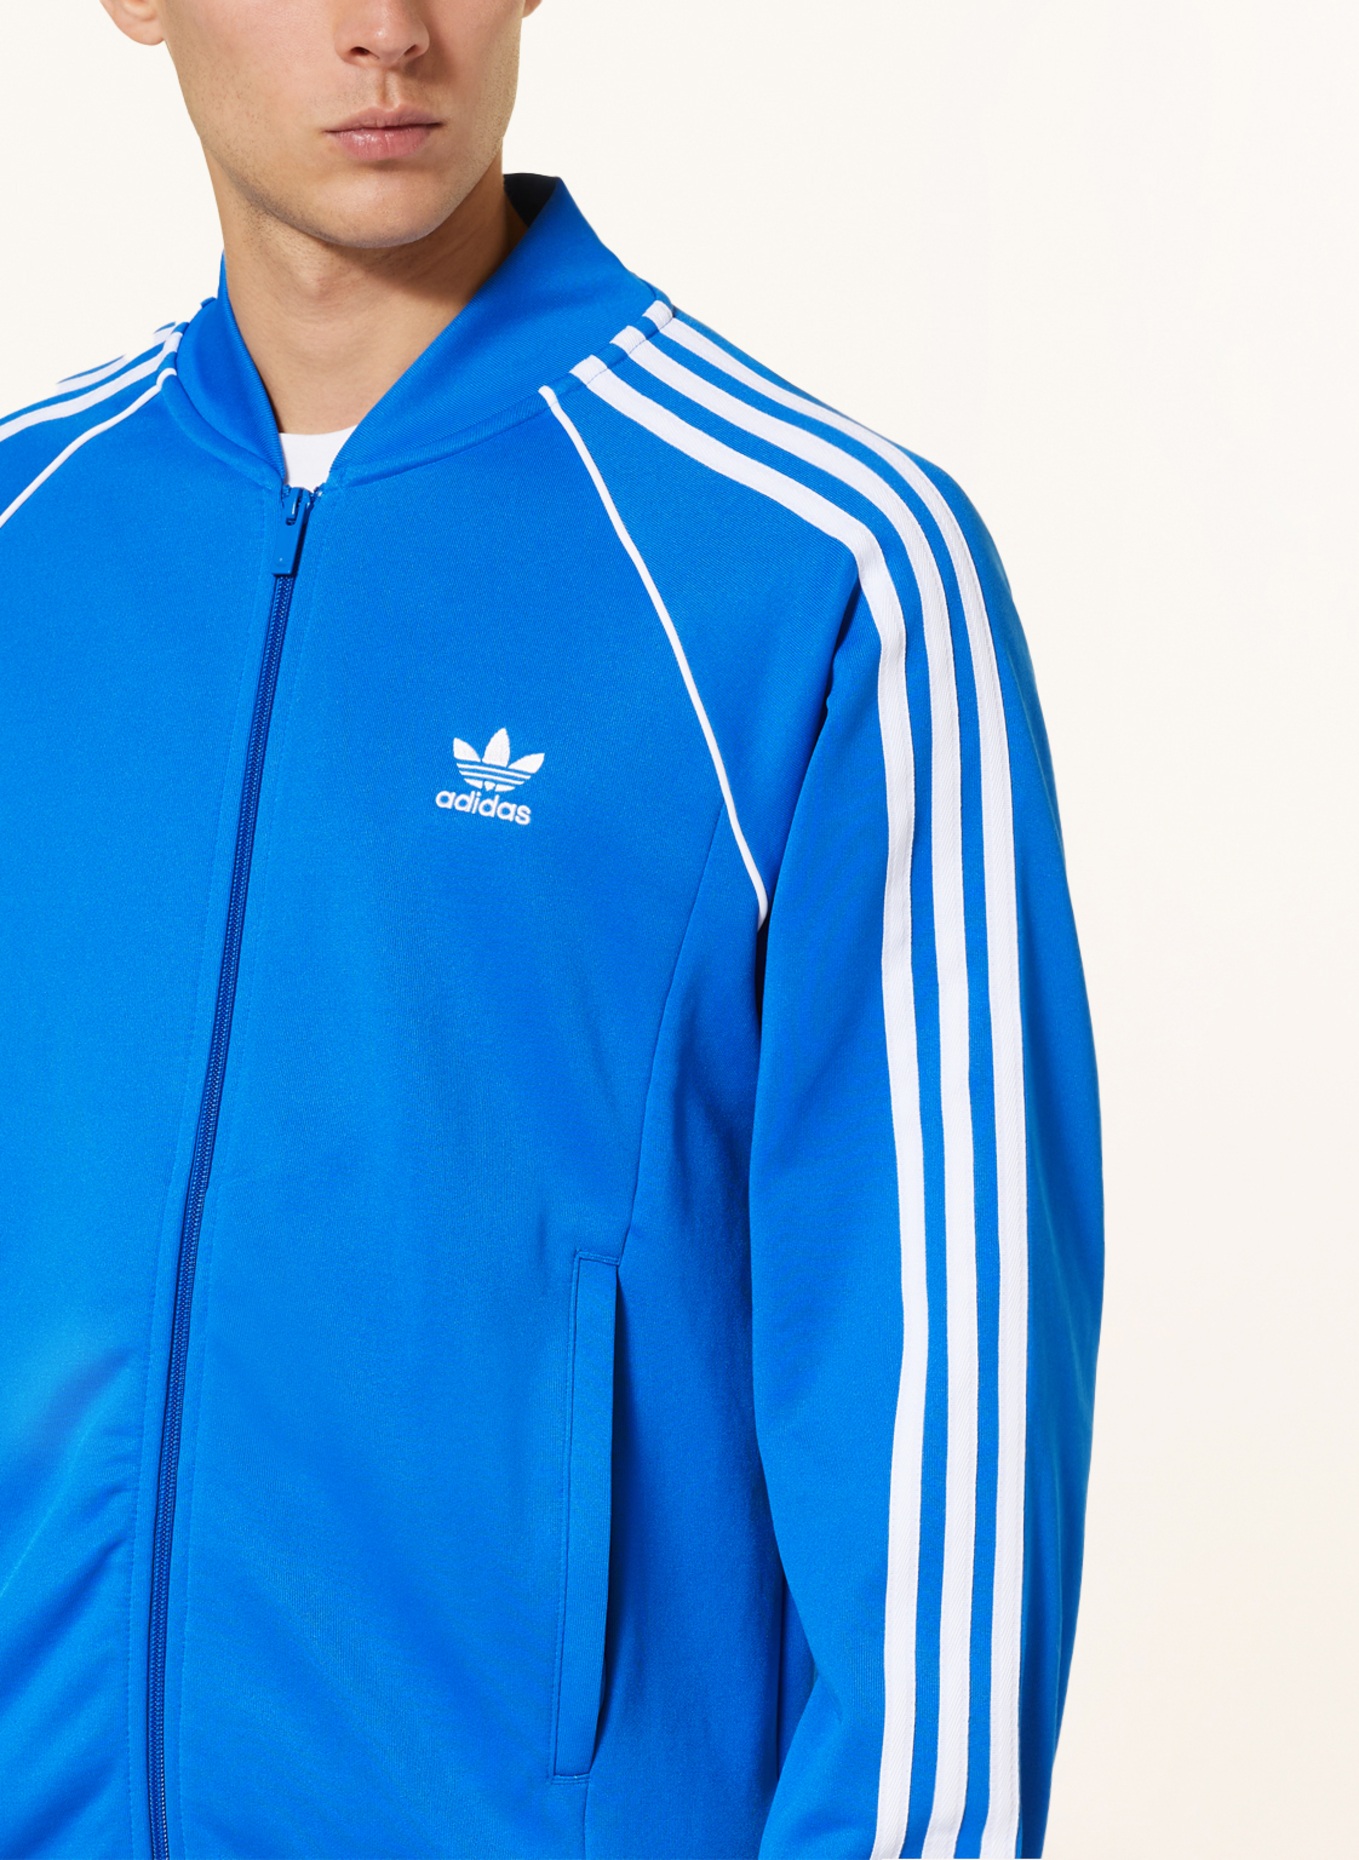 white ORIGINALS Originals blue/ in jacket Training ADICOLOR SST CLASSICS adidas